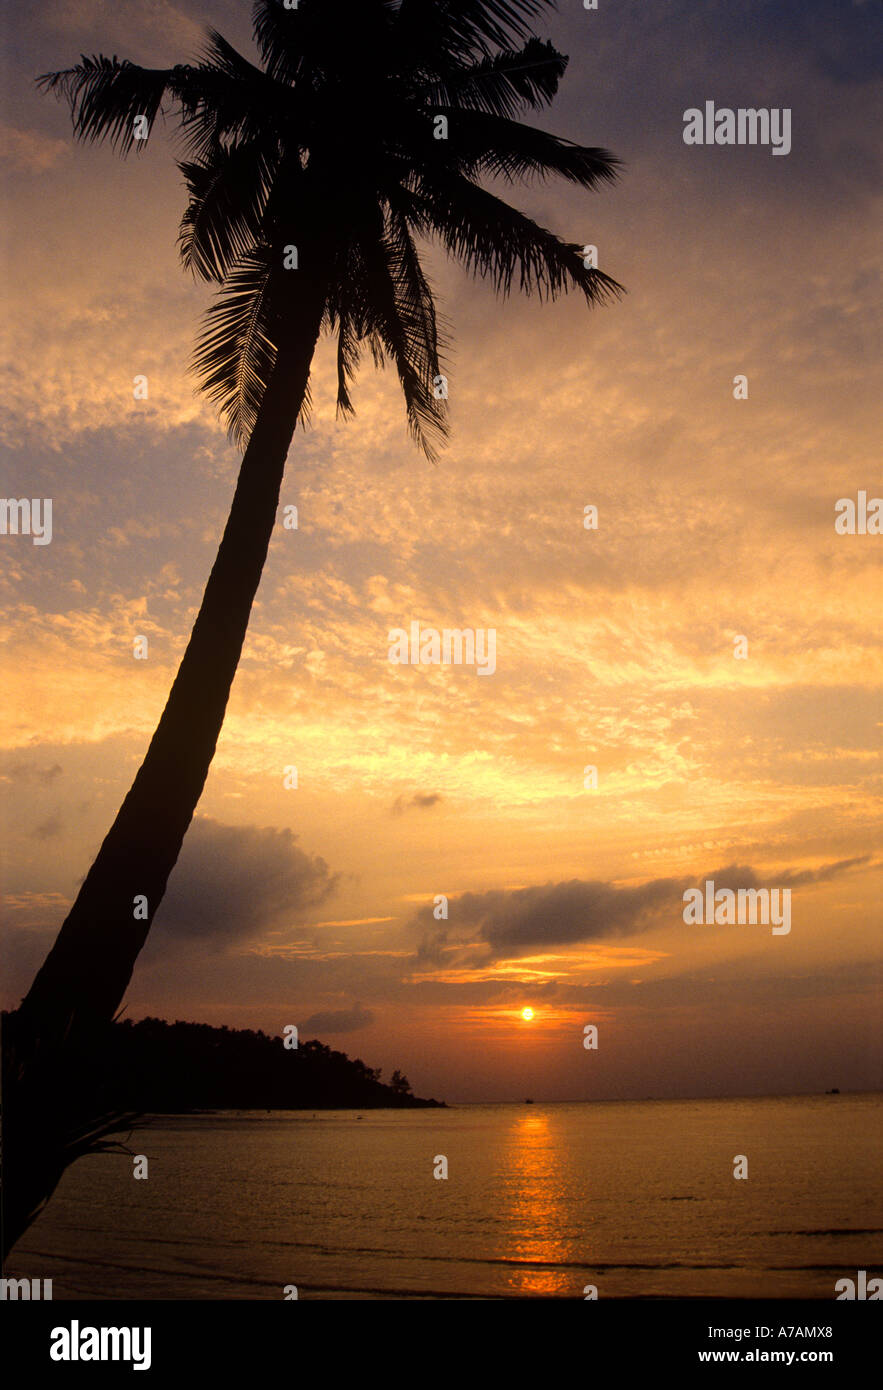 Coucher de soleil sur la plage tropicale silhouette of palm arbre en premier plan Banque D'Images